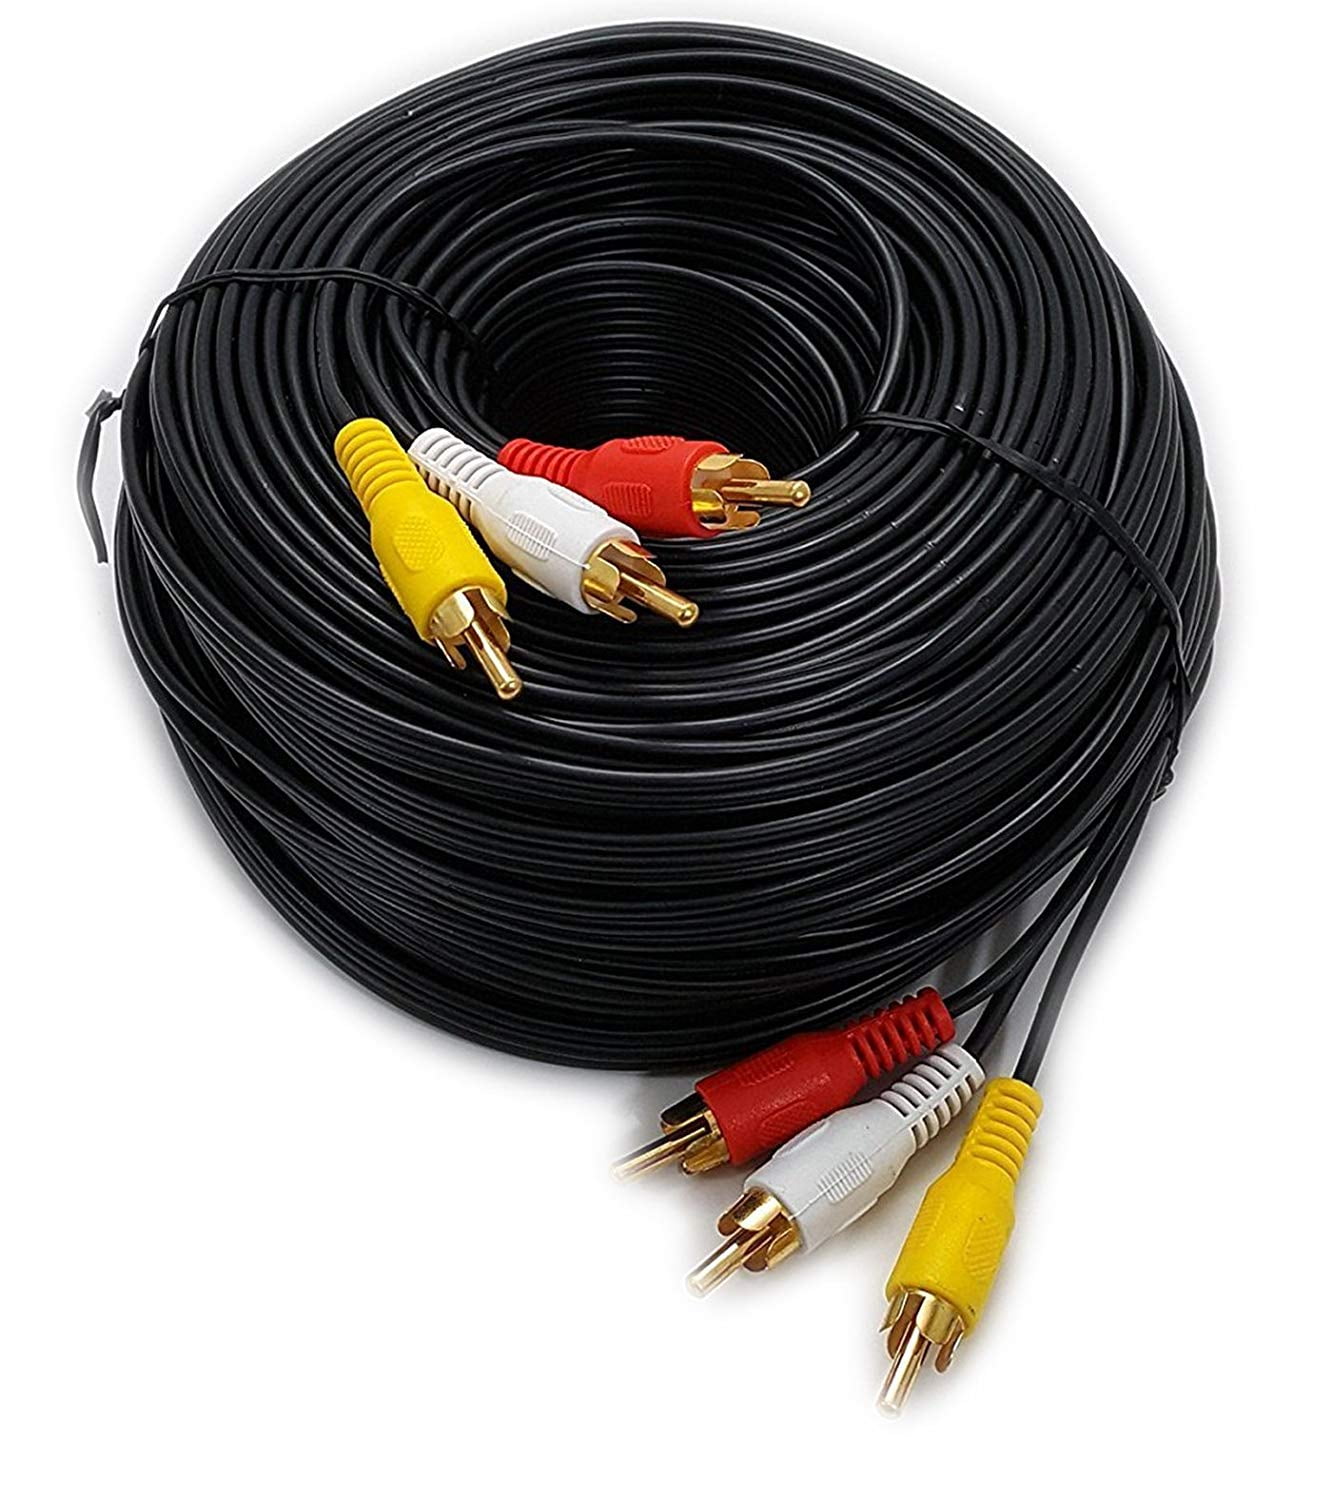 Cable audio - video 3x3 RCA, 1.8 metros - Venprotech